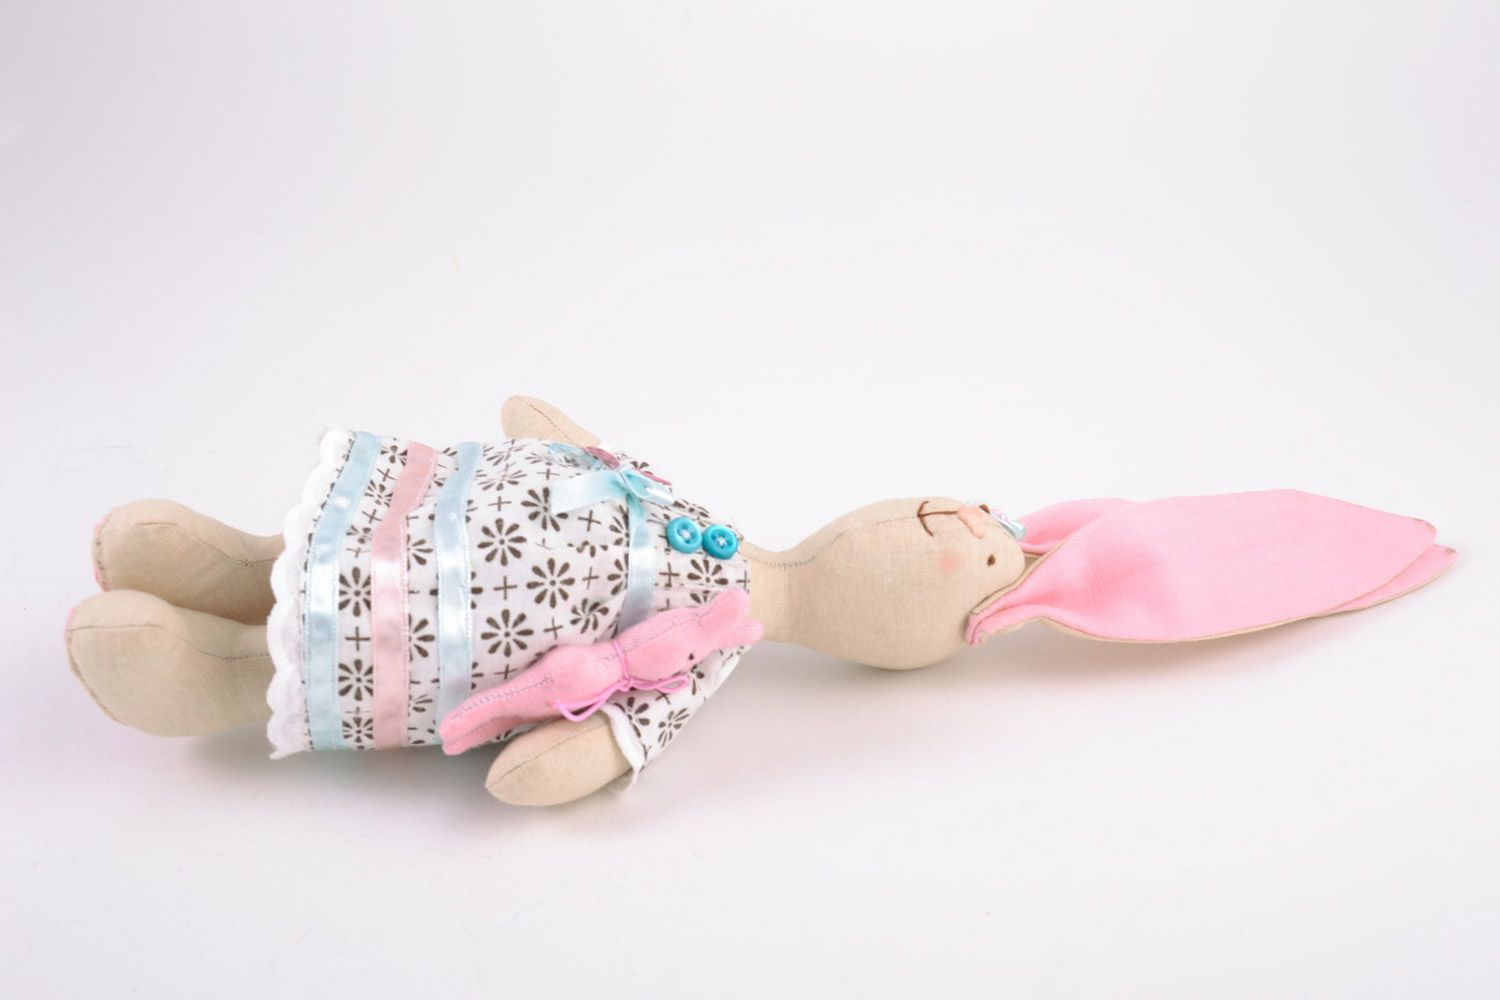 Textil Kuscheltier Hase rosa im Kleid aus Baumwolle schön für Mädchen handmade foto 4